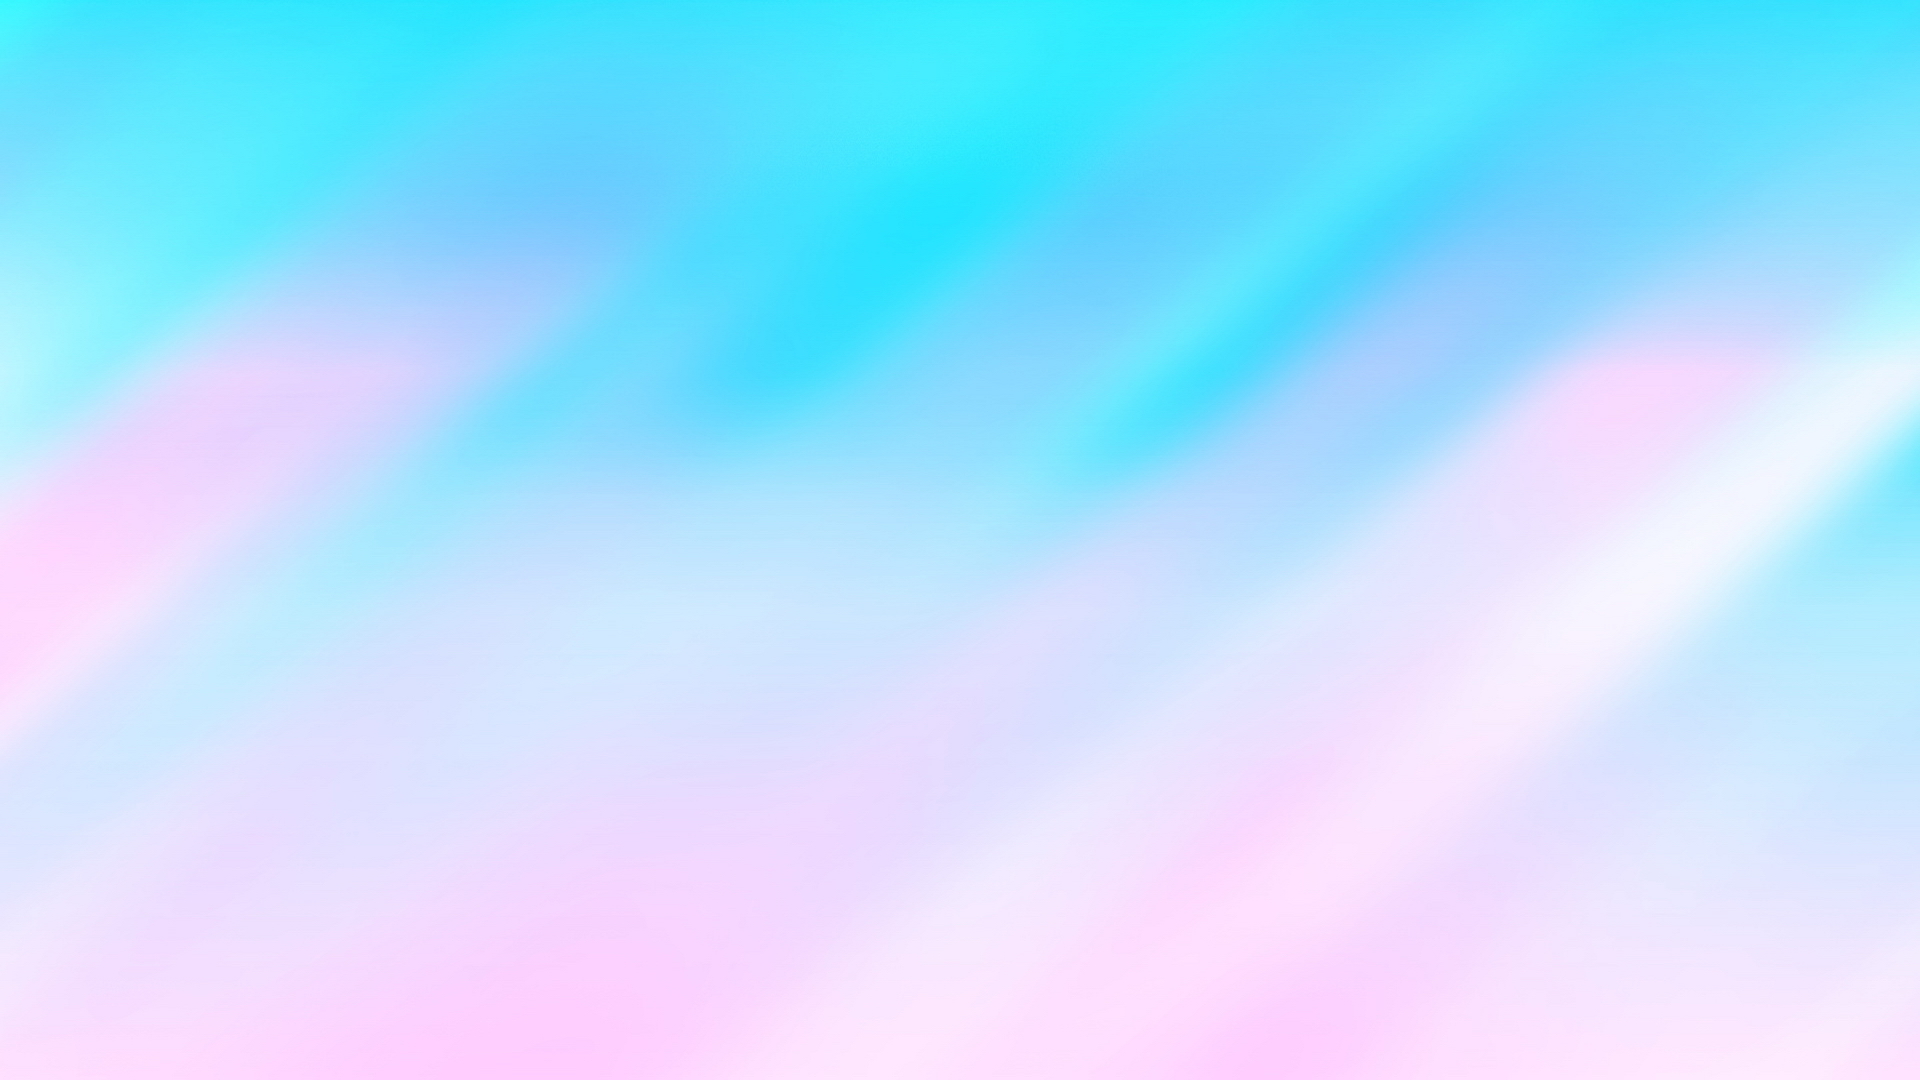 pastelltapete,blau,aqua,himmel,rosa,türkis